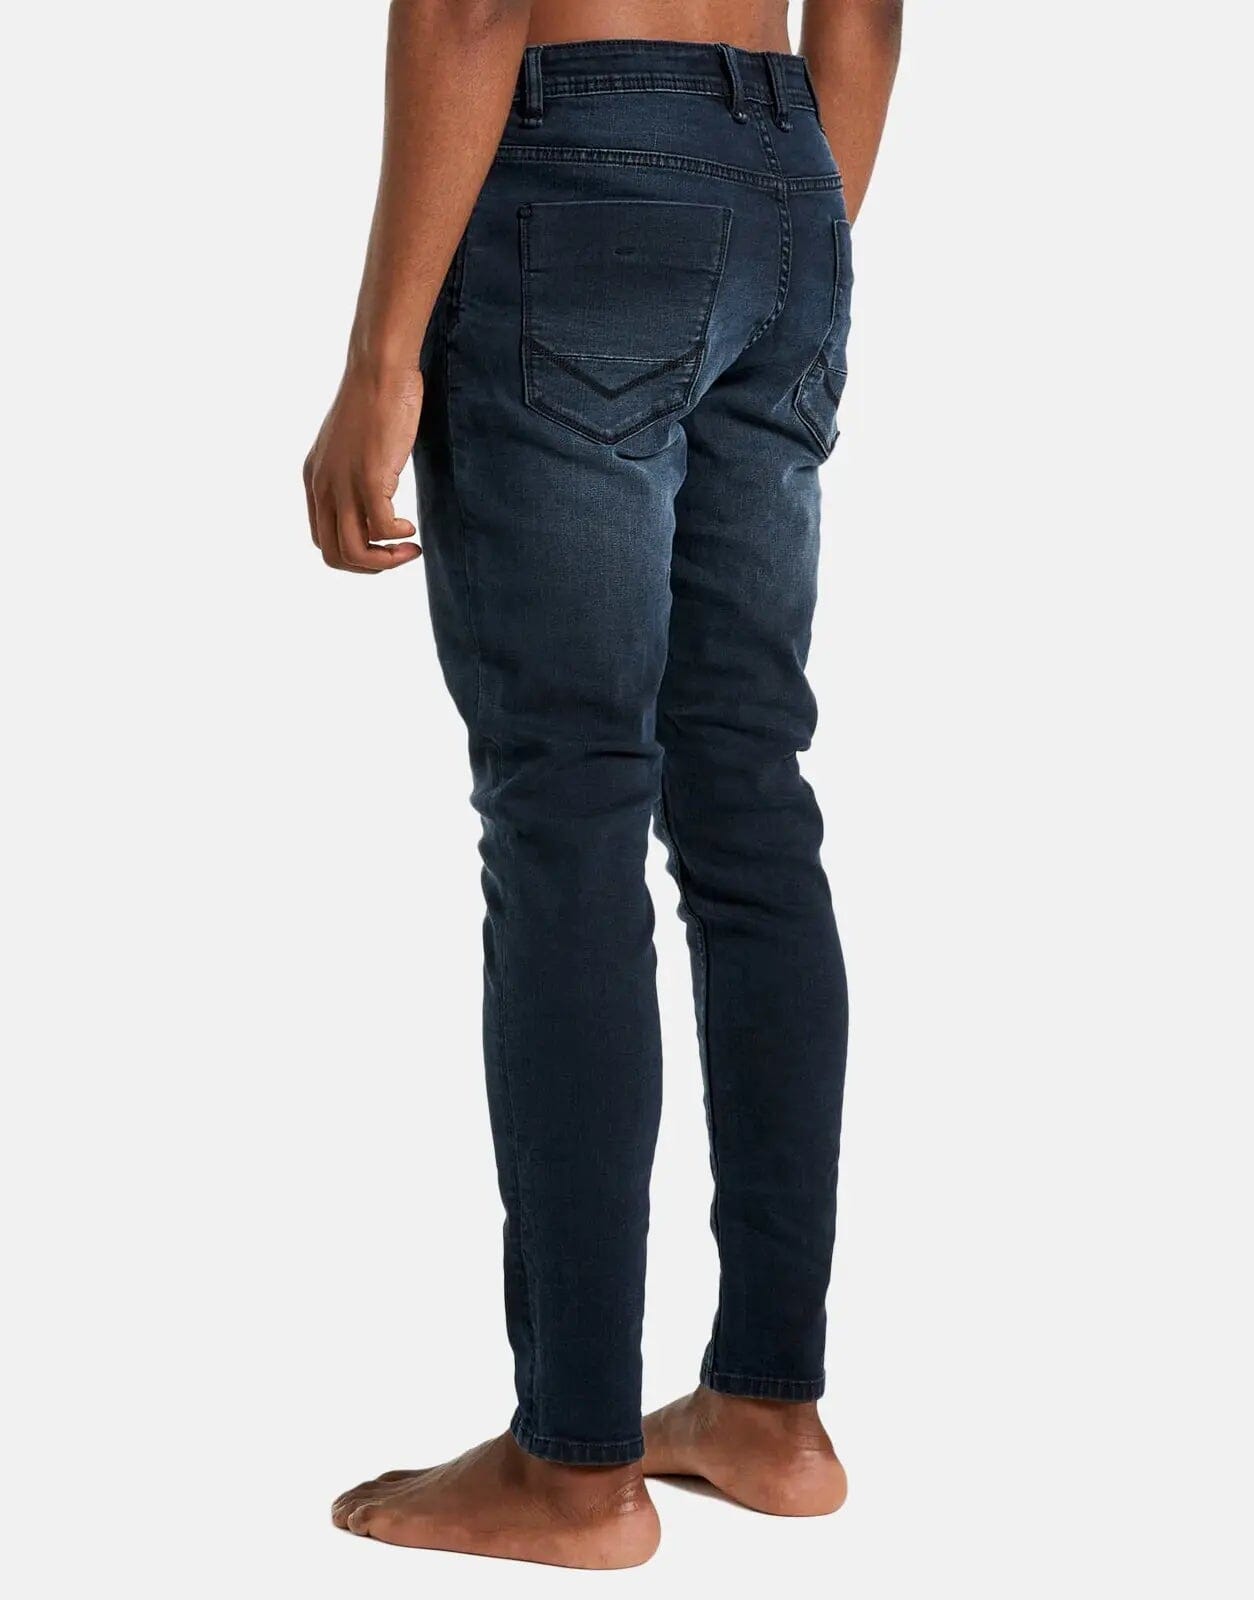 SPCC Obsidian Jeans - Subwear